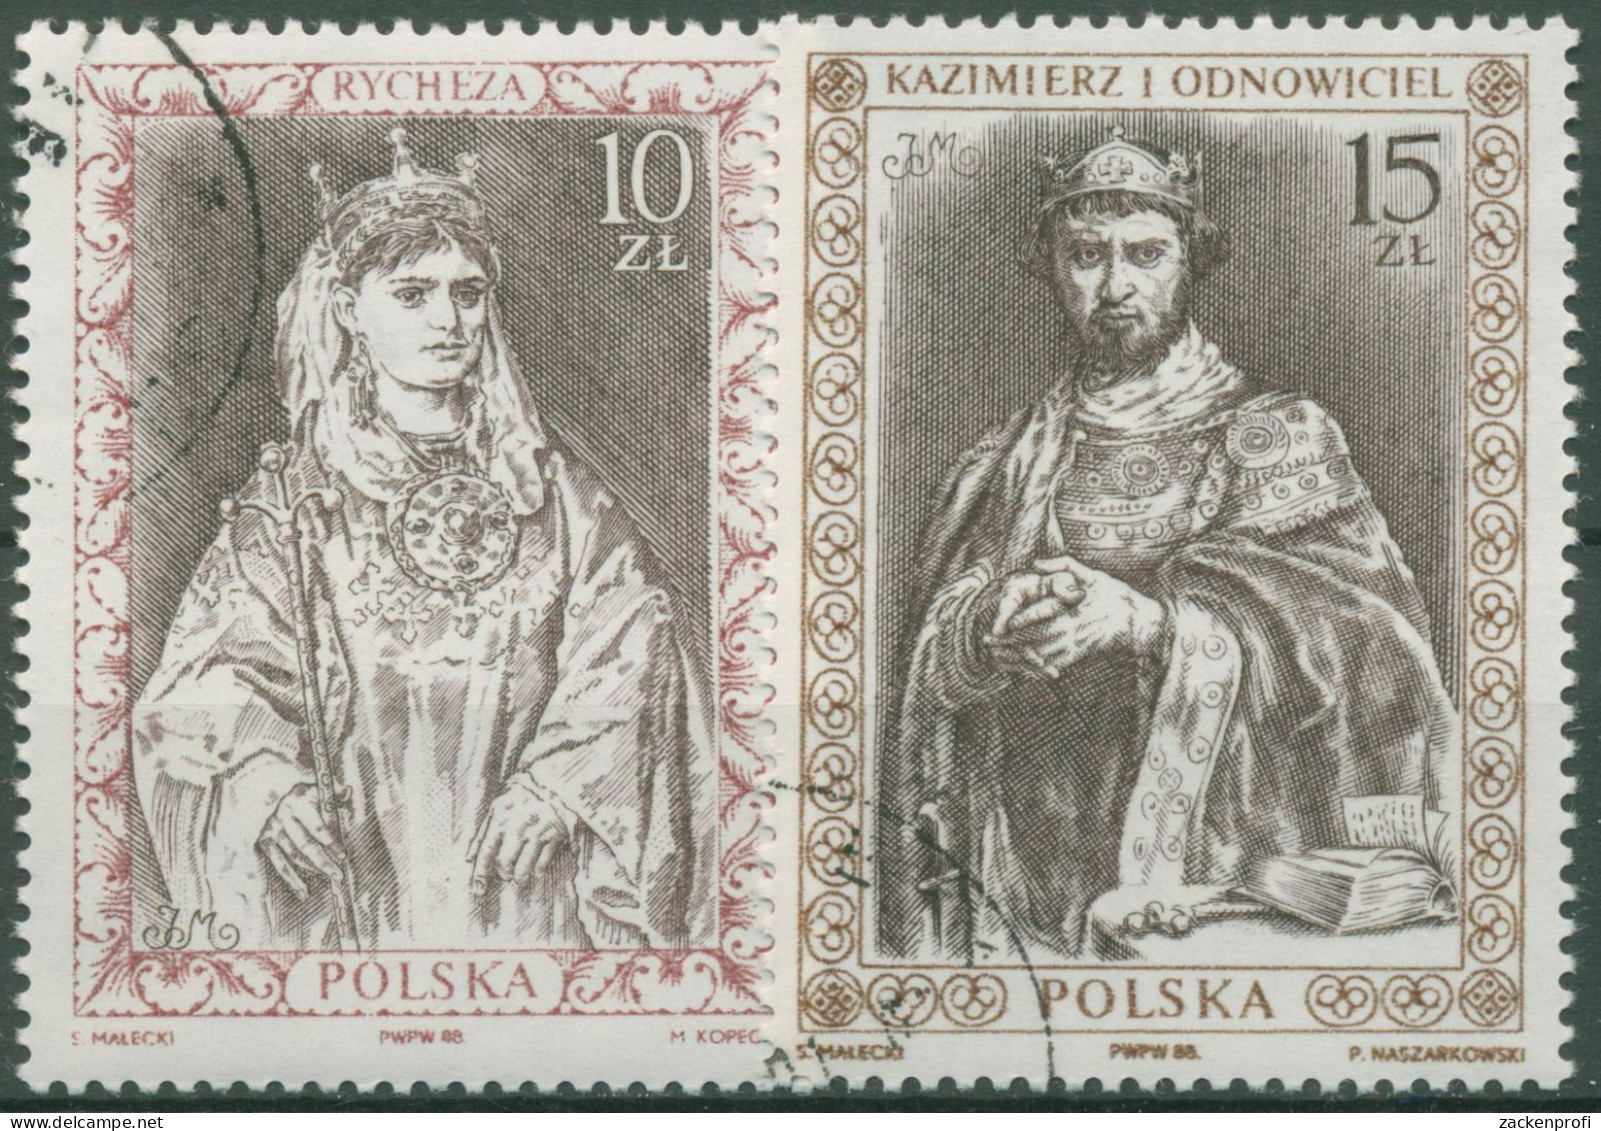 Polen 1988 Königin Richeza V. Lothringen, König Kasimir I. 3178/79 Gestempelt - Used Stamps